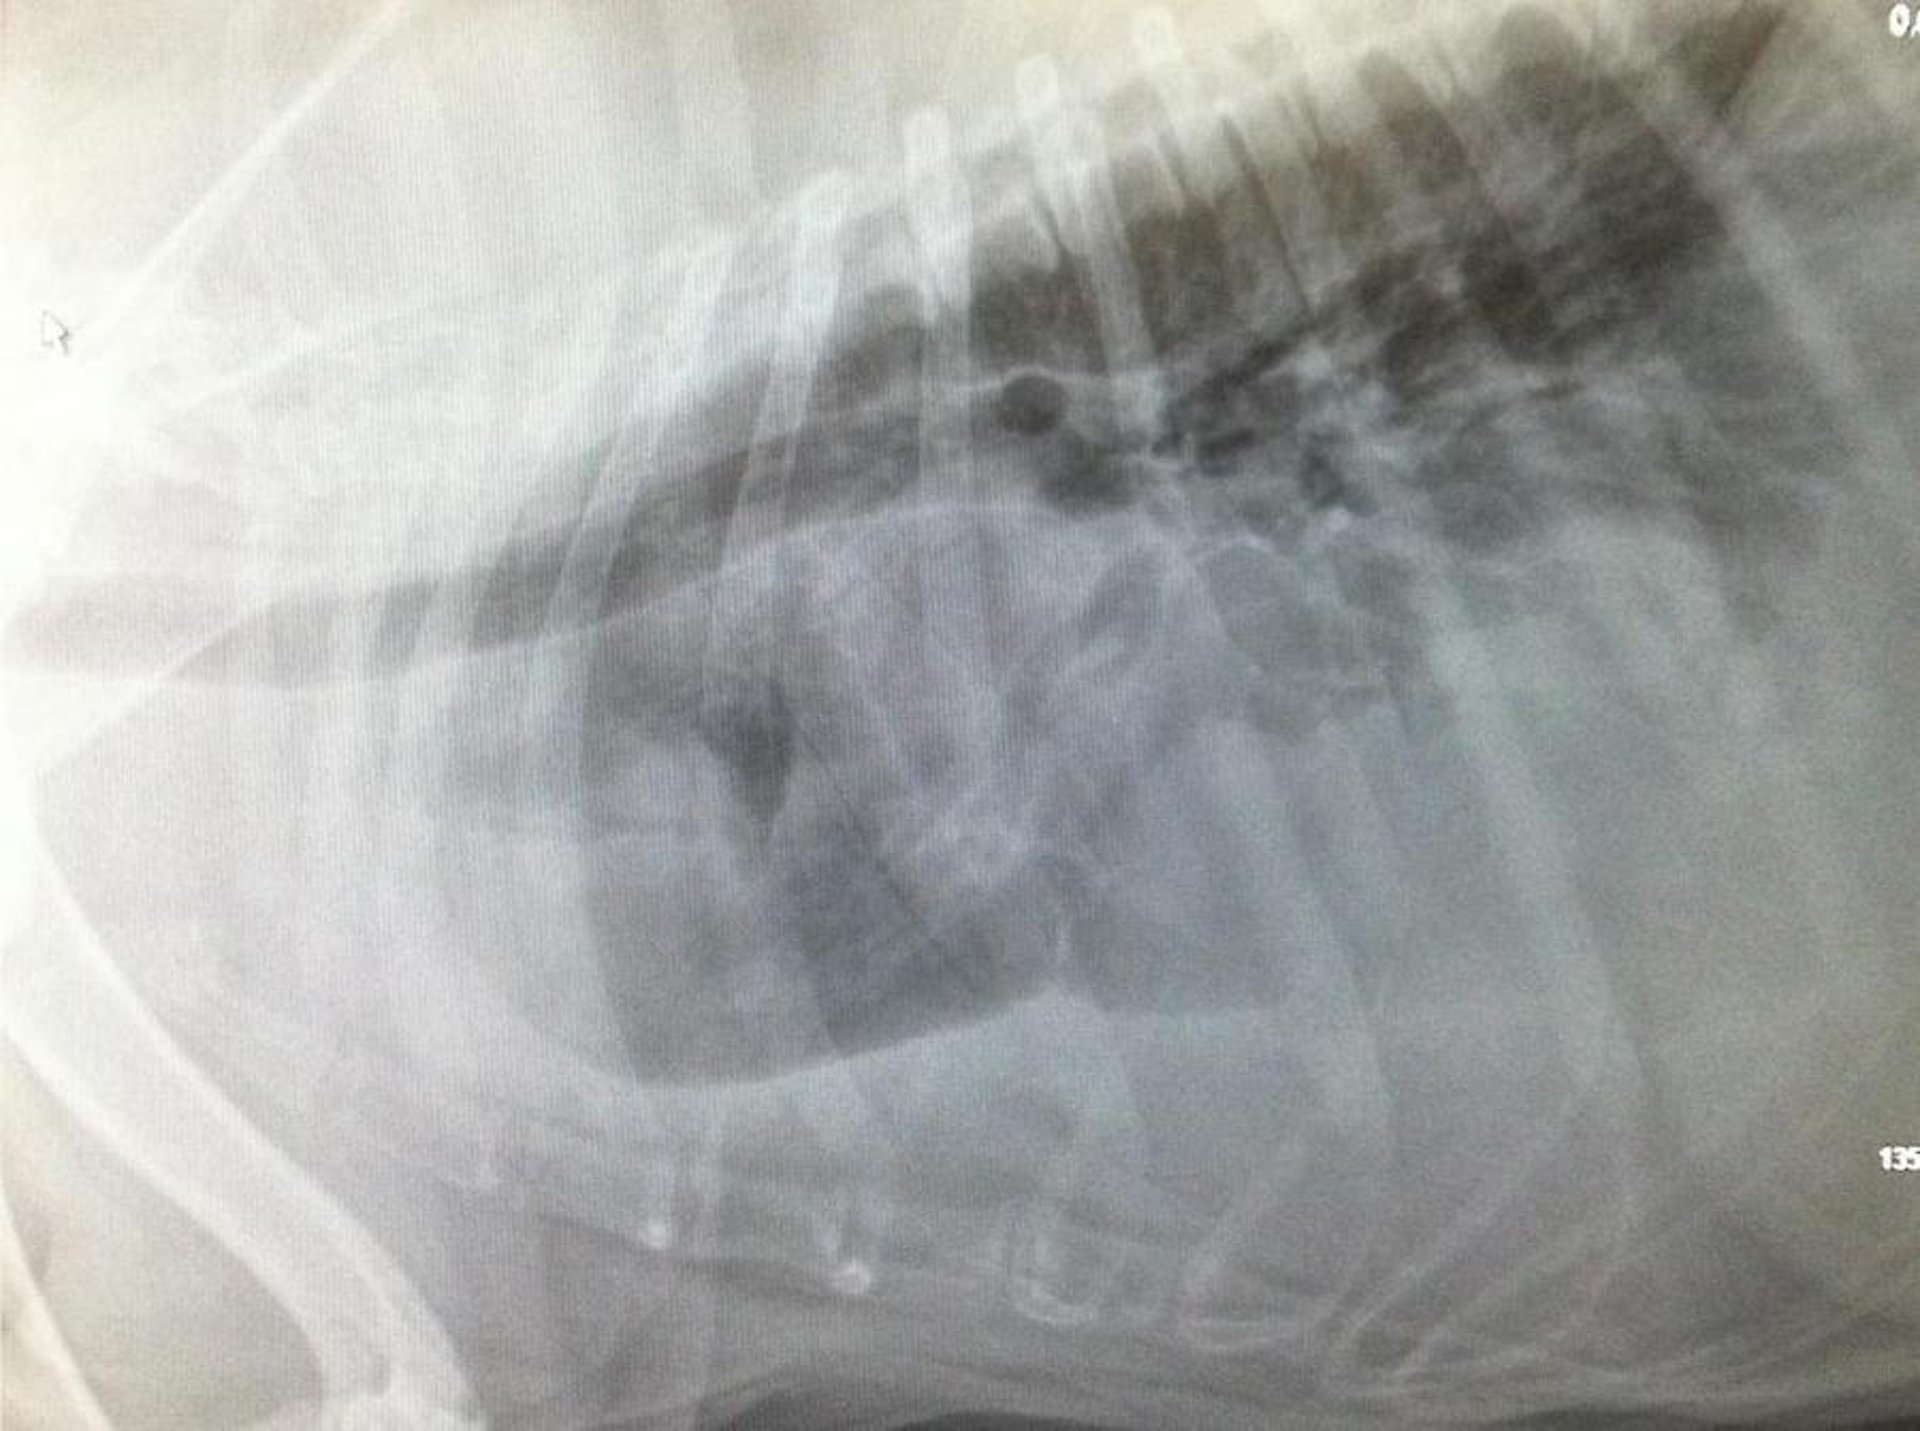 Malignant histiocytosis in thorax, dog